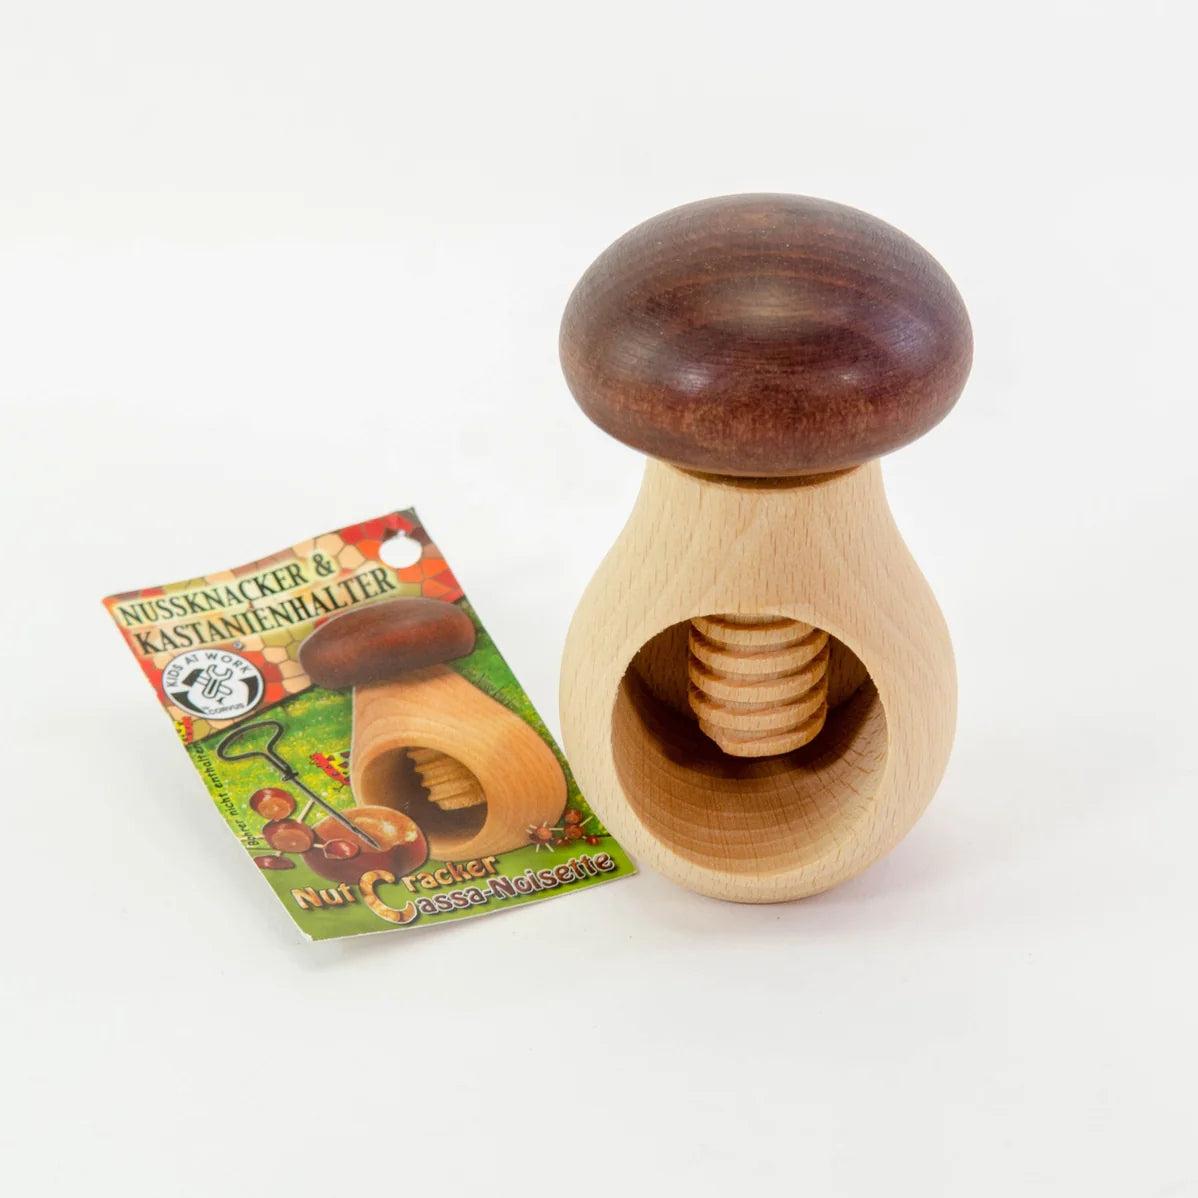 Work Chestnut Holder + Nutcracker Mushroom